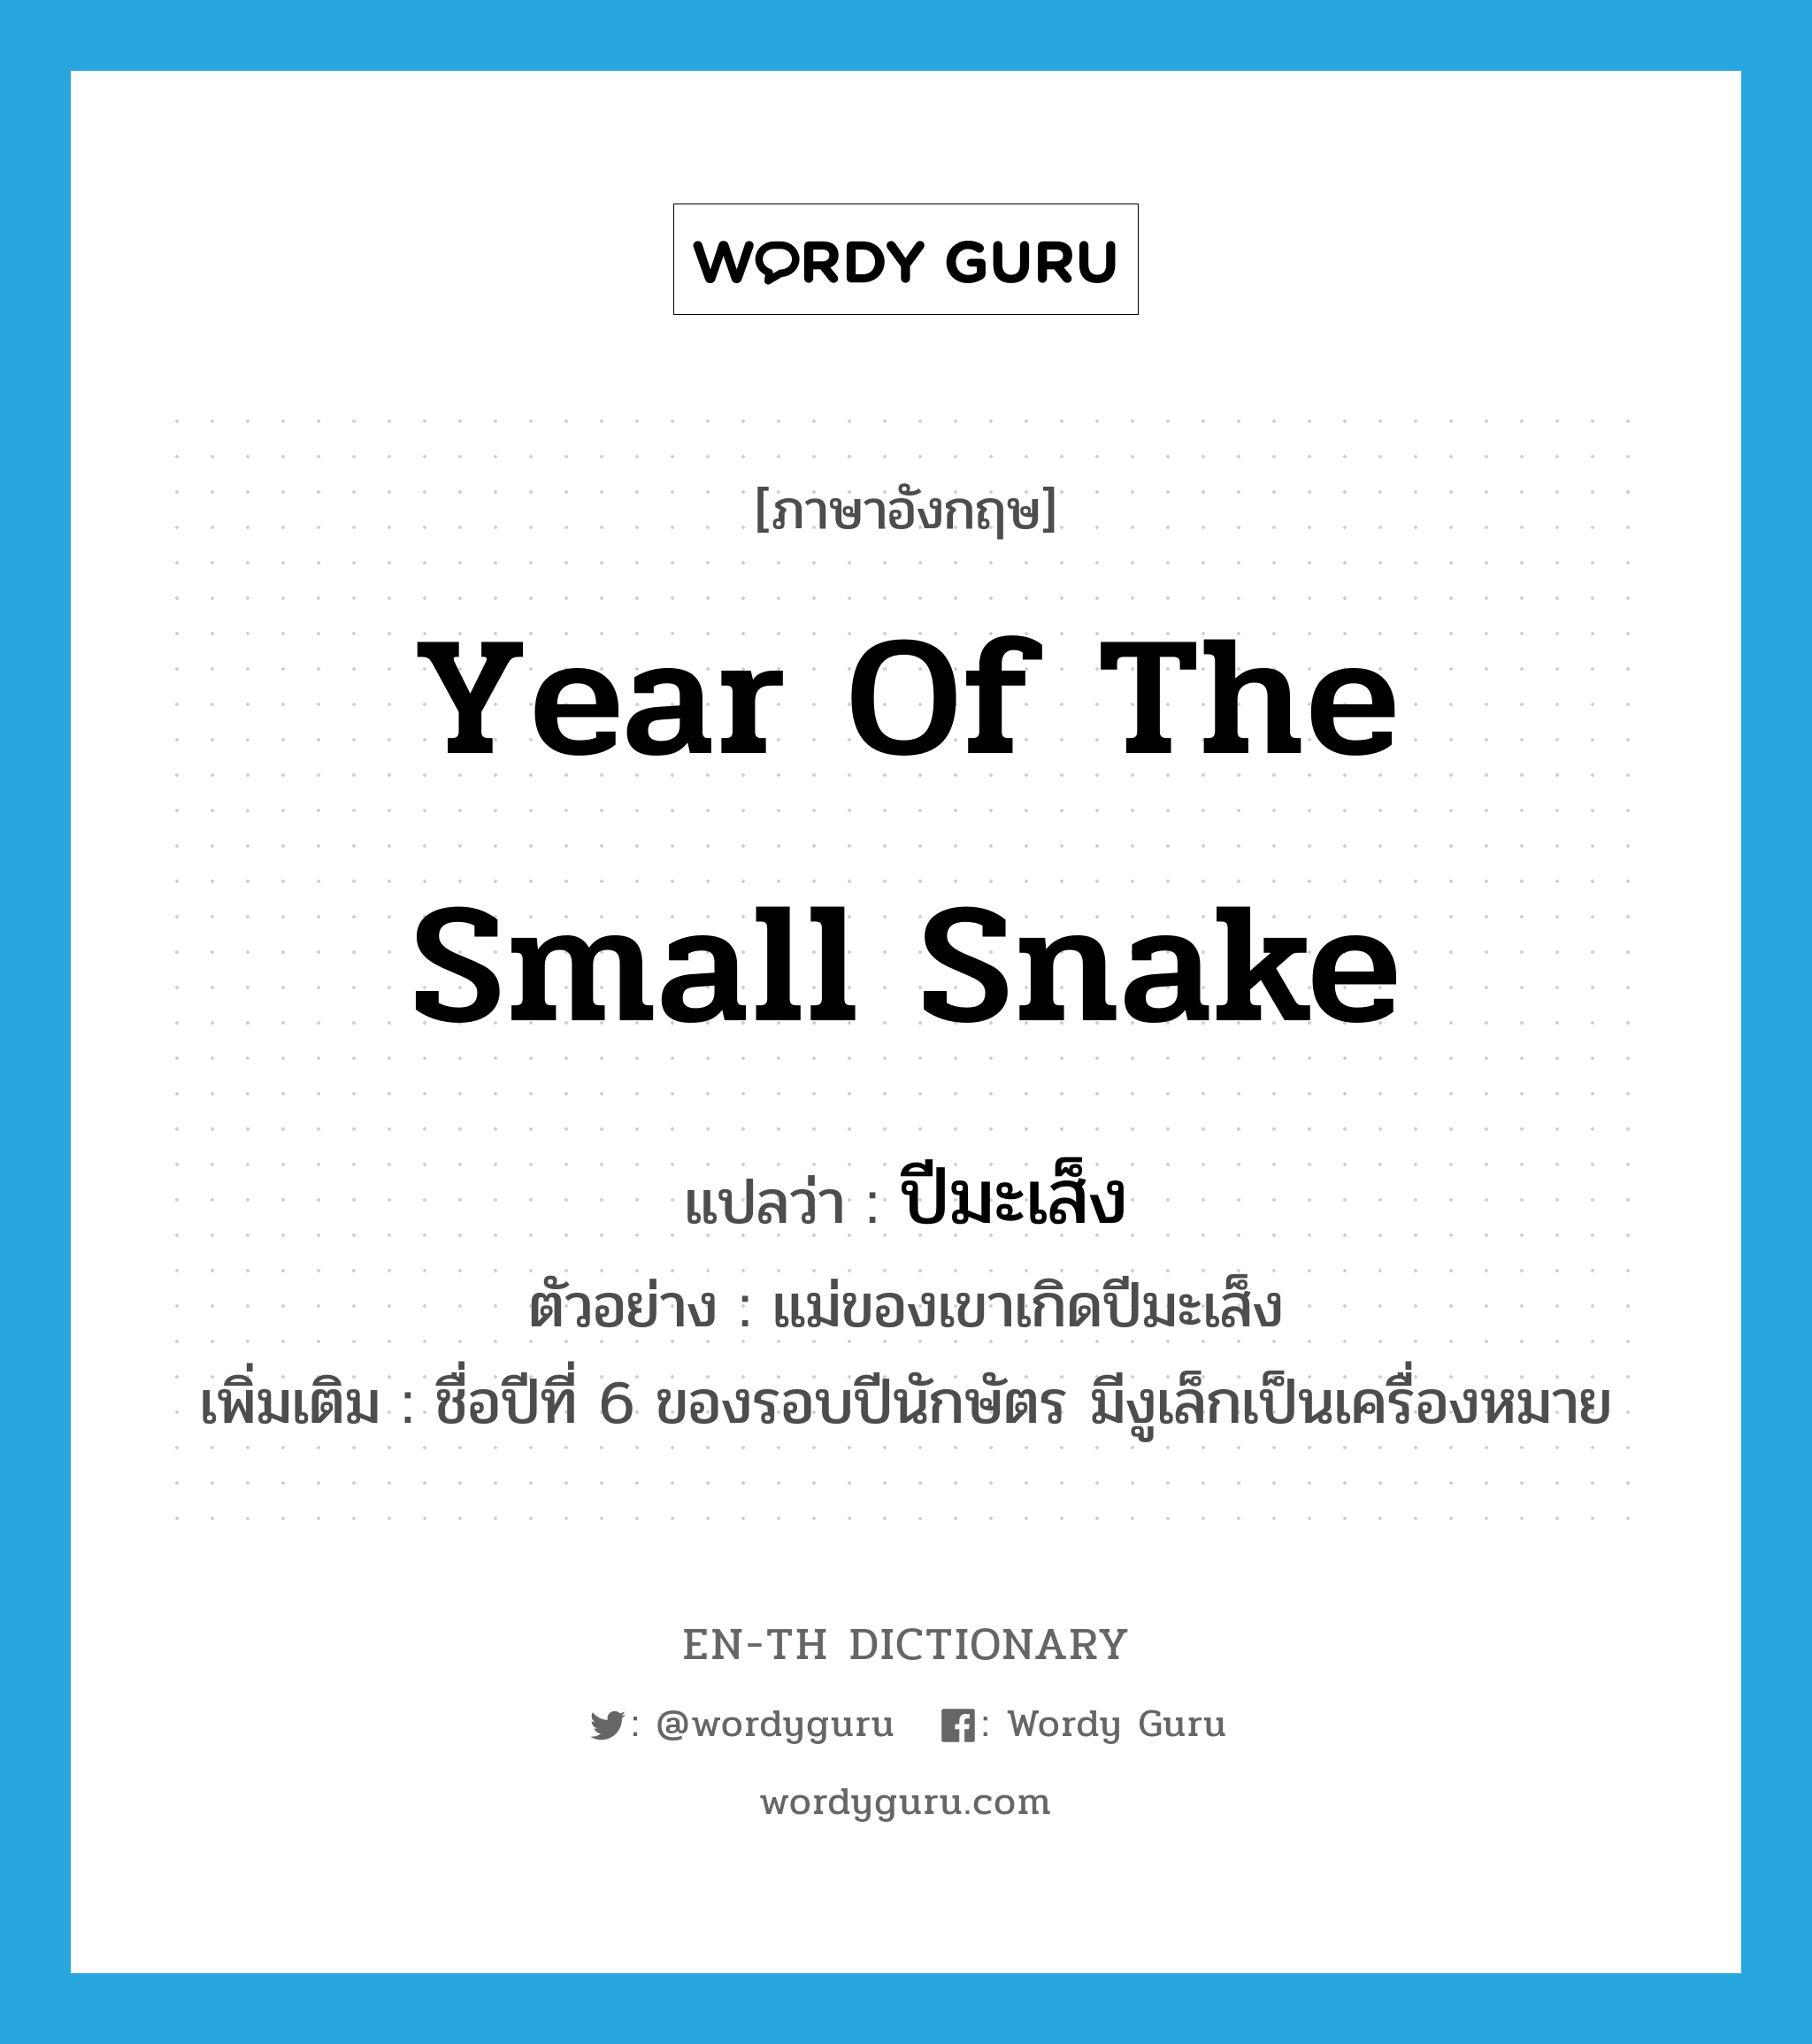 year of the small snake แปลว่า?, คำศัพท์ภาษาอังกฤษ year of the small snake แปลว่า ปีมะเส็ง ประเภท N ตัวอย่าง แม่ของเขาเกิดปีมะเส็ง เพิ่มเติม ชื่อปีที่ 6 ของรอบปีนักษัตร มีงูเล็กเป็นเครื่องหมาย หมวด N